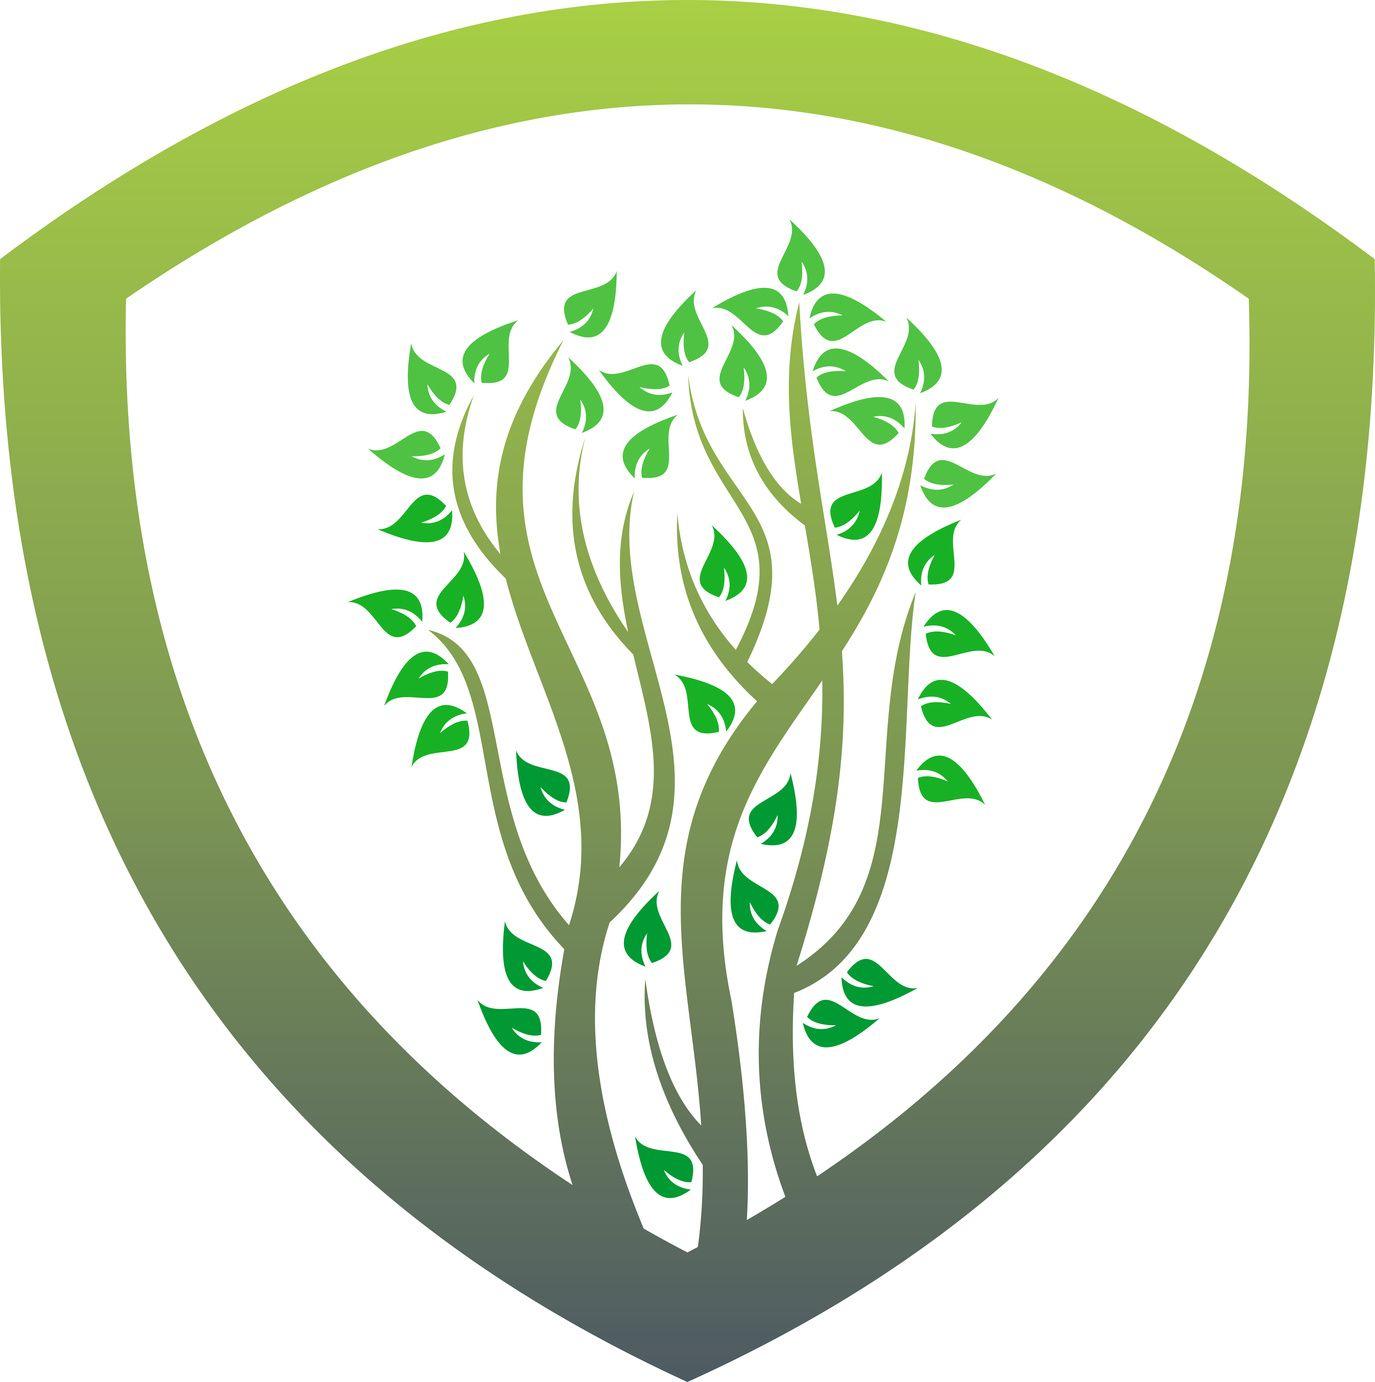 Make a Business Logo - Create an Original Garden Logo and Watch Your Business Grow • Online ...